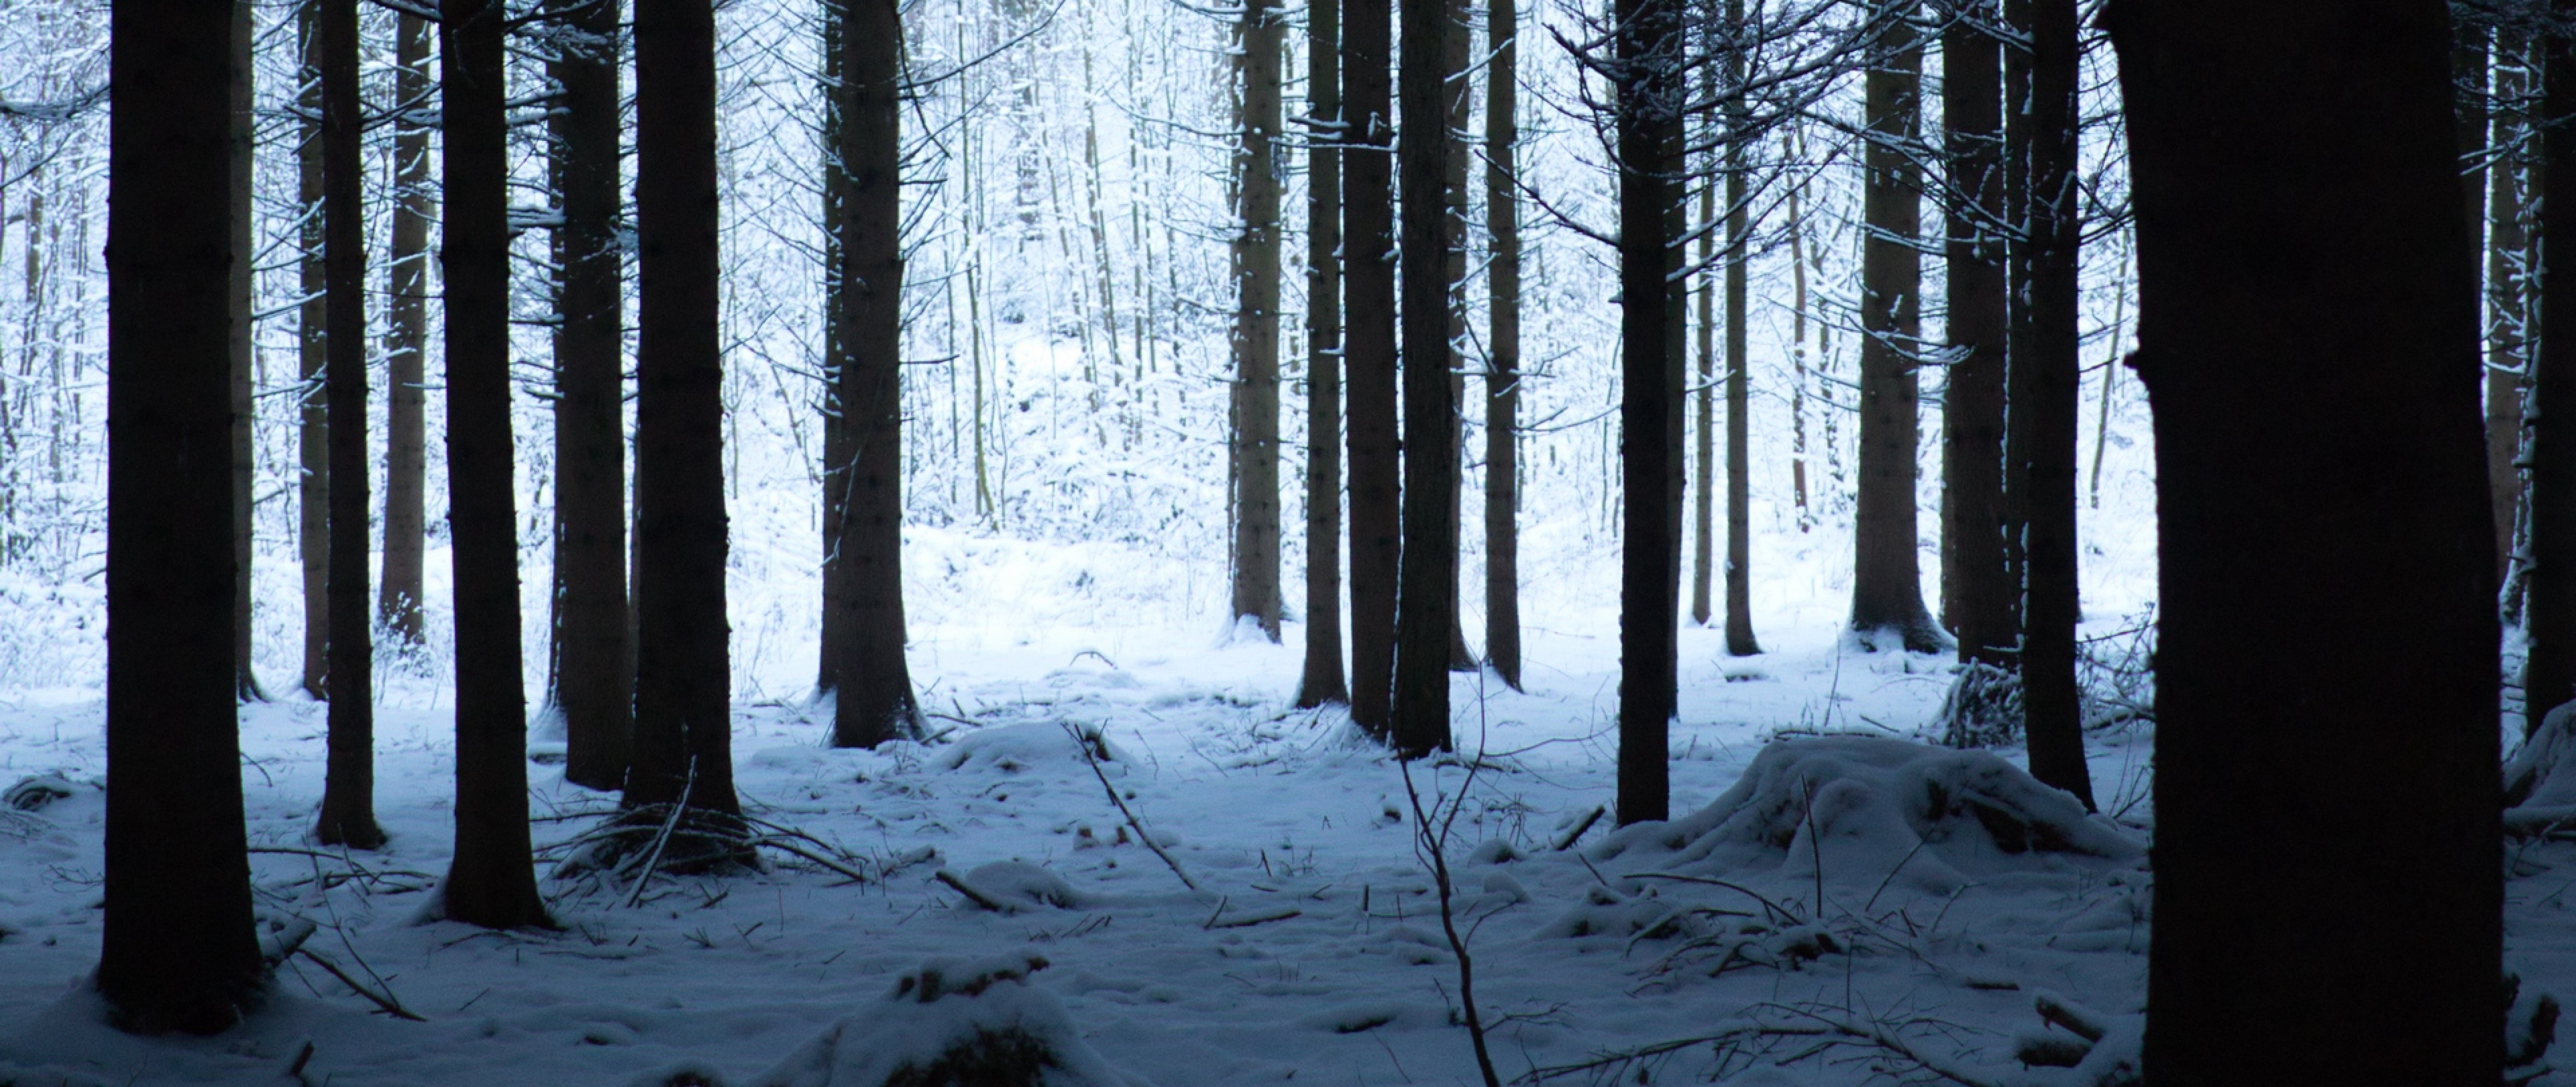 ハイキング壁紙愛,木,雪,冬,森林,自然